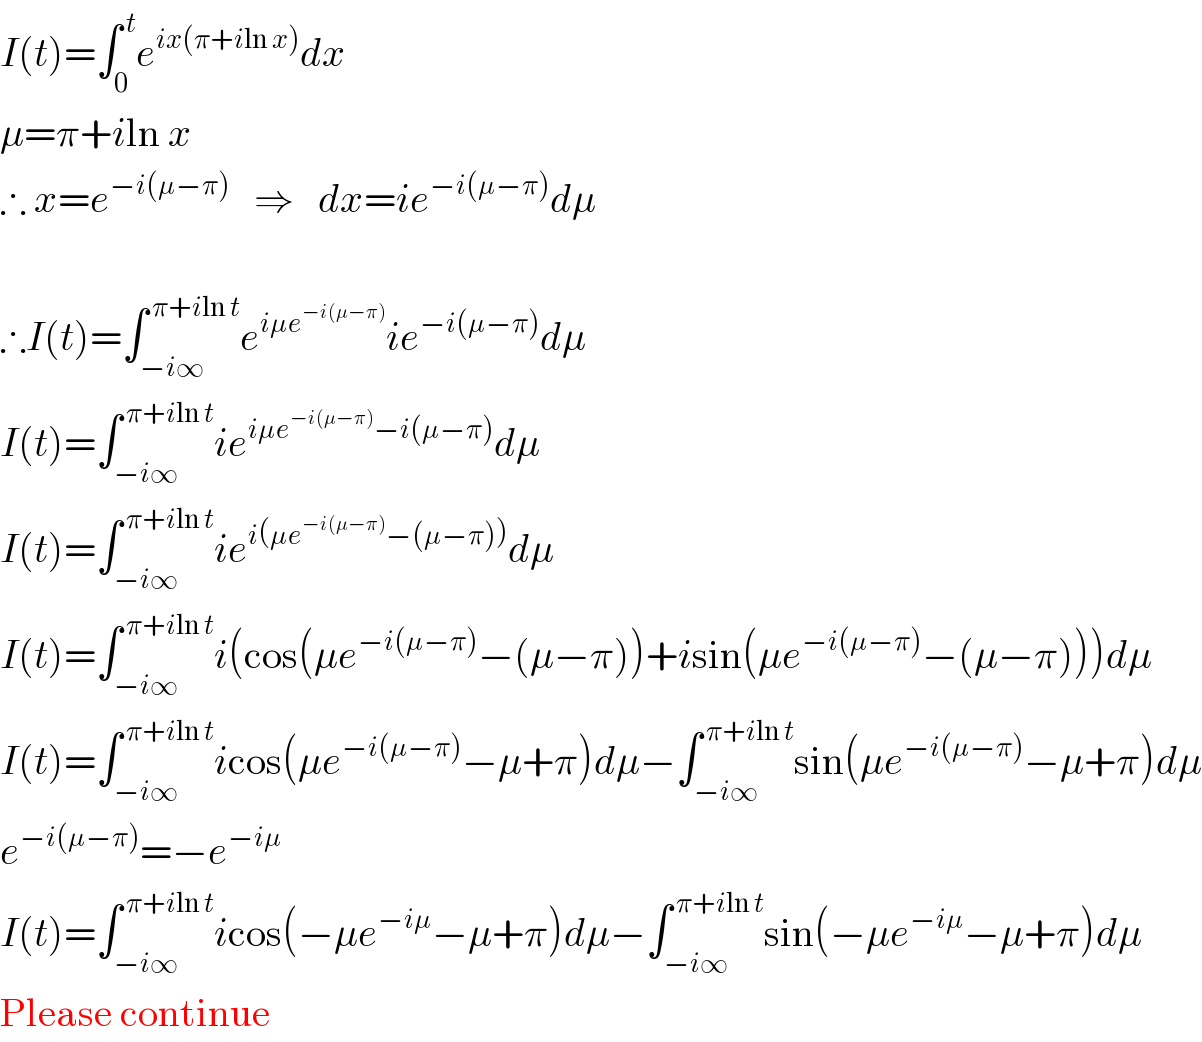 I(t)=∫_0 ^( t) e^(ix(π+iln x)) dx  μ=π+iln x  ∴ x=e^(−i(μ−π))    ⇒   dx=ie^(−i(μ−π)) dμ     ∴I(t)=∫_(−i∞) ^( π+iln t) e^(iμe^(−i(μ−π)) ) ie^(−i(μ−π)) dμ  I(t)=∫_(−i∞) ^( π+iln t) ie^(iμe^(−i(μ−π)) −i(μ−π)) dμ  I(t)=∫_(−i∞) ^( π+iln t) ie^(i(μe^(−i(μ−π)) −(μ−π))) dμ  I(t)=∫_(−i∞) ^( π+iln t) i(cos(μe^(−i(μ−π)) −(μ−π))+isin(μe^(−i(μ−π)) −(μ−π)))dμ  I(t)=∫_(−i∞) ^( π+iln t) icos(μe^(−i(μ−π)) −μ+π)dμ−∫_(−i∞) ^( π+iln t) sin(μe^(−i(μ−π)) −μ+π)dμ  e^(−i(μ−π)) =−e^(−iμ)   I(t)=∫_(−i∞) ^( π+iln t) icos(−μe^(−iμ) −μ+π)dμ−∫_(−i∞) ^( π+iln t) sin(−μe^(−iμ) −μ+π)dμ  Please continue  